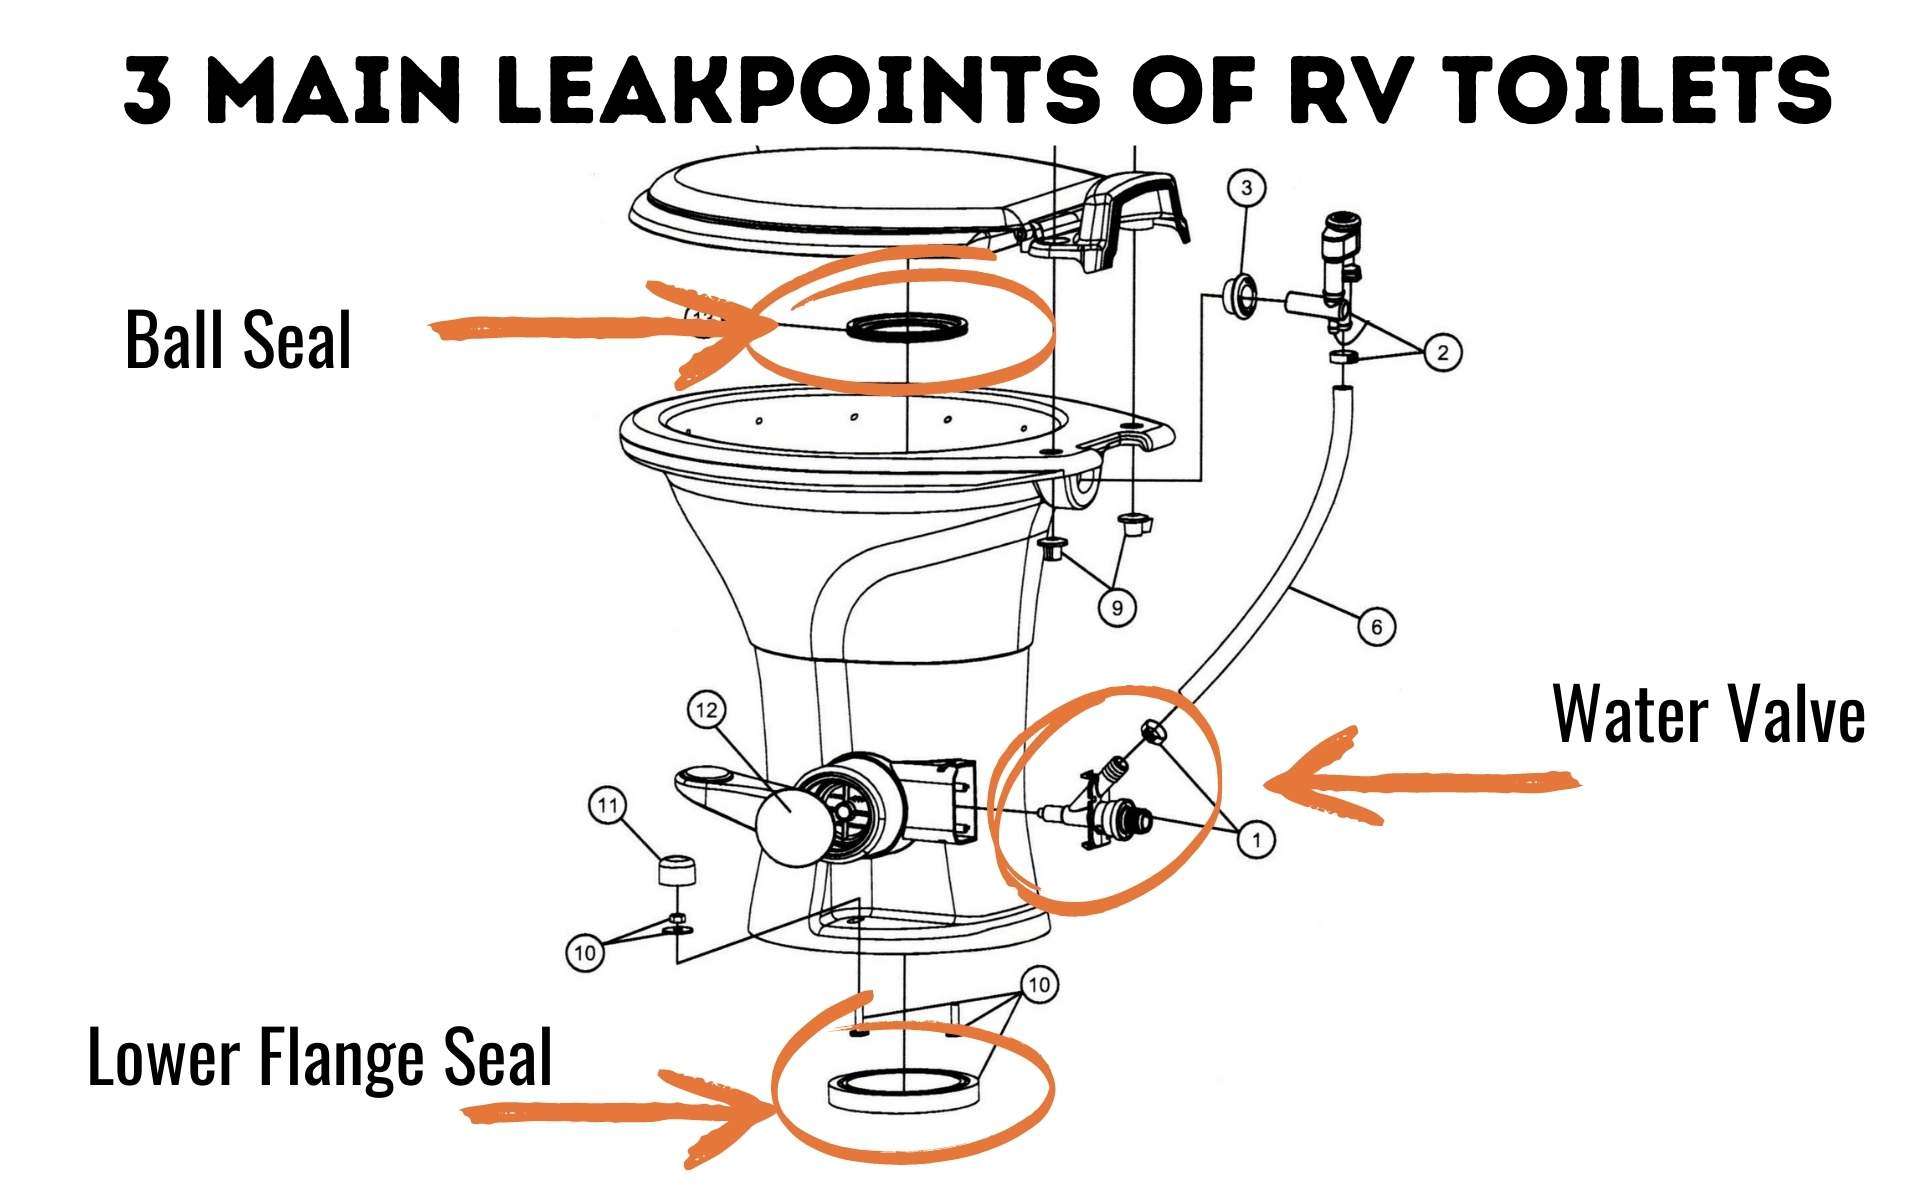 RV toilet leak points diagram